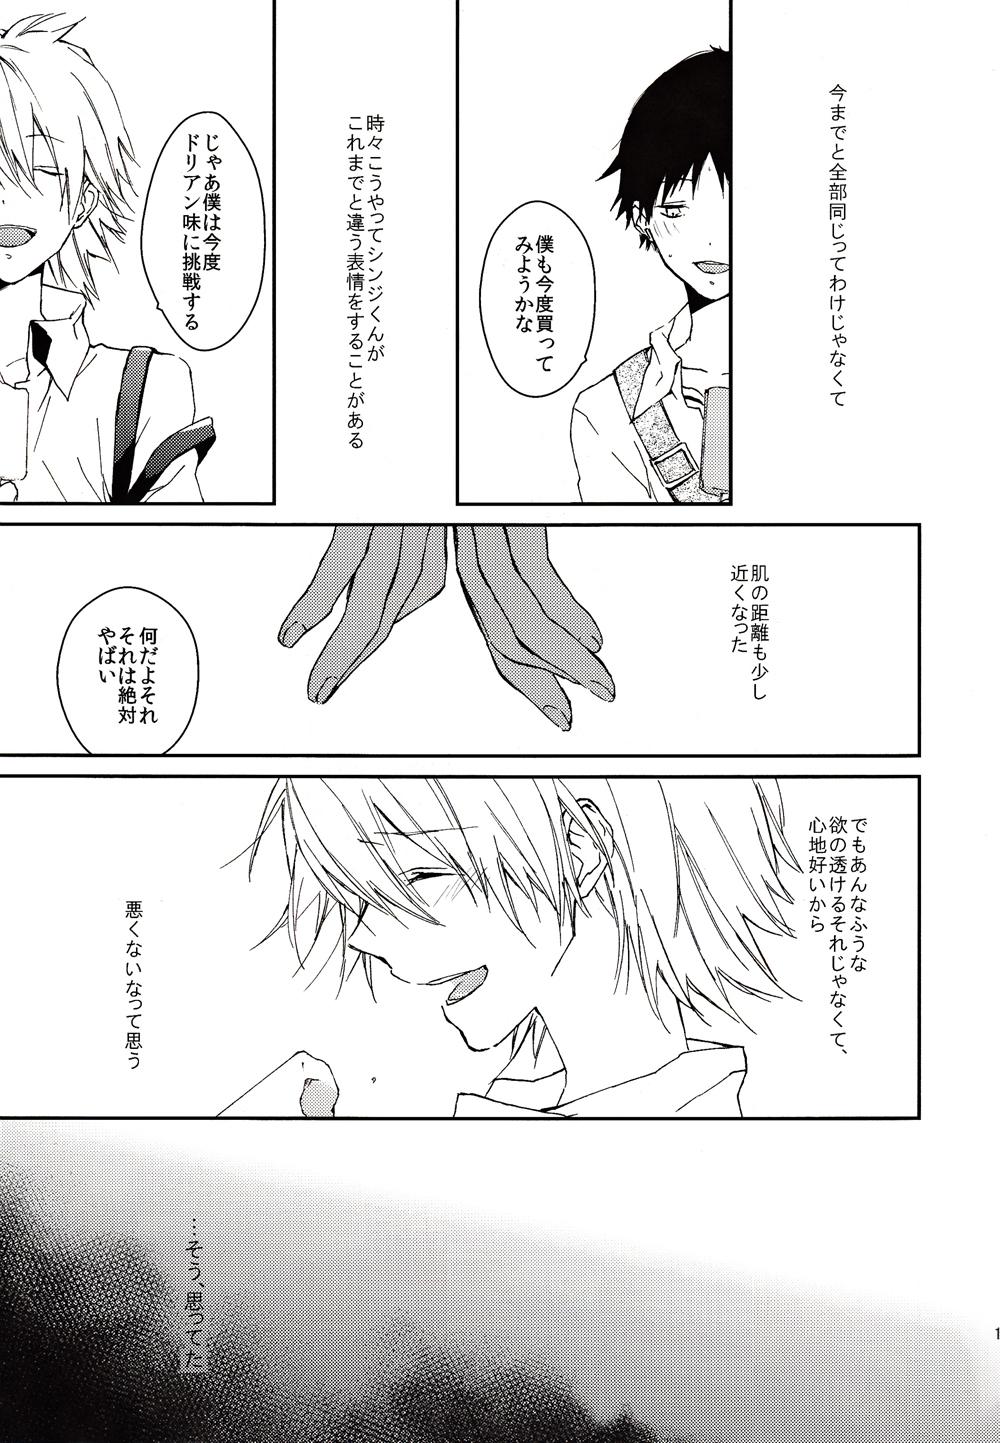 [Mekoro (meco)] Kono Netsu no Na o Shiranai (Neon Genesis Evangelion) [2013-02-16] page 16 full